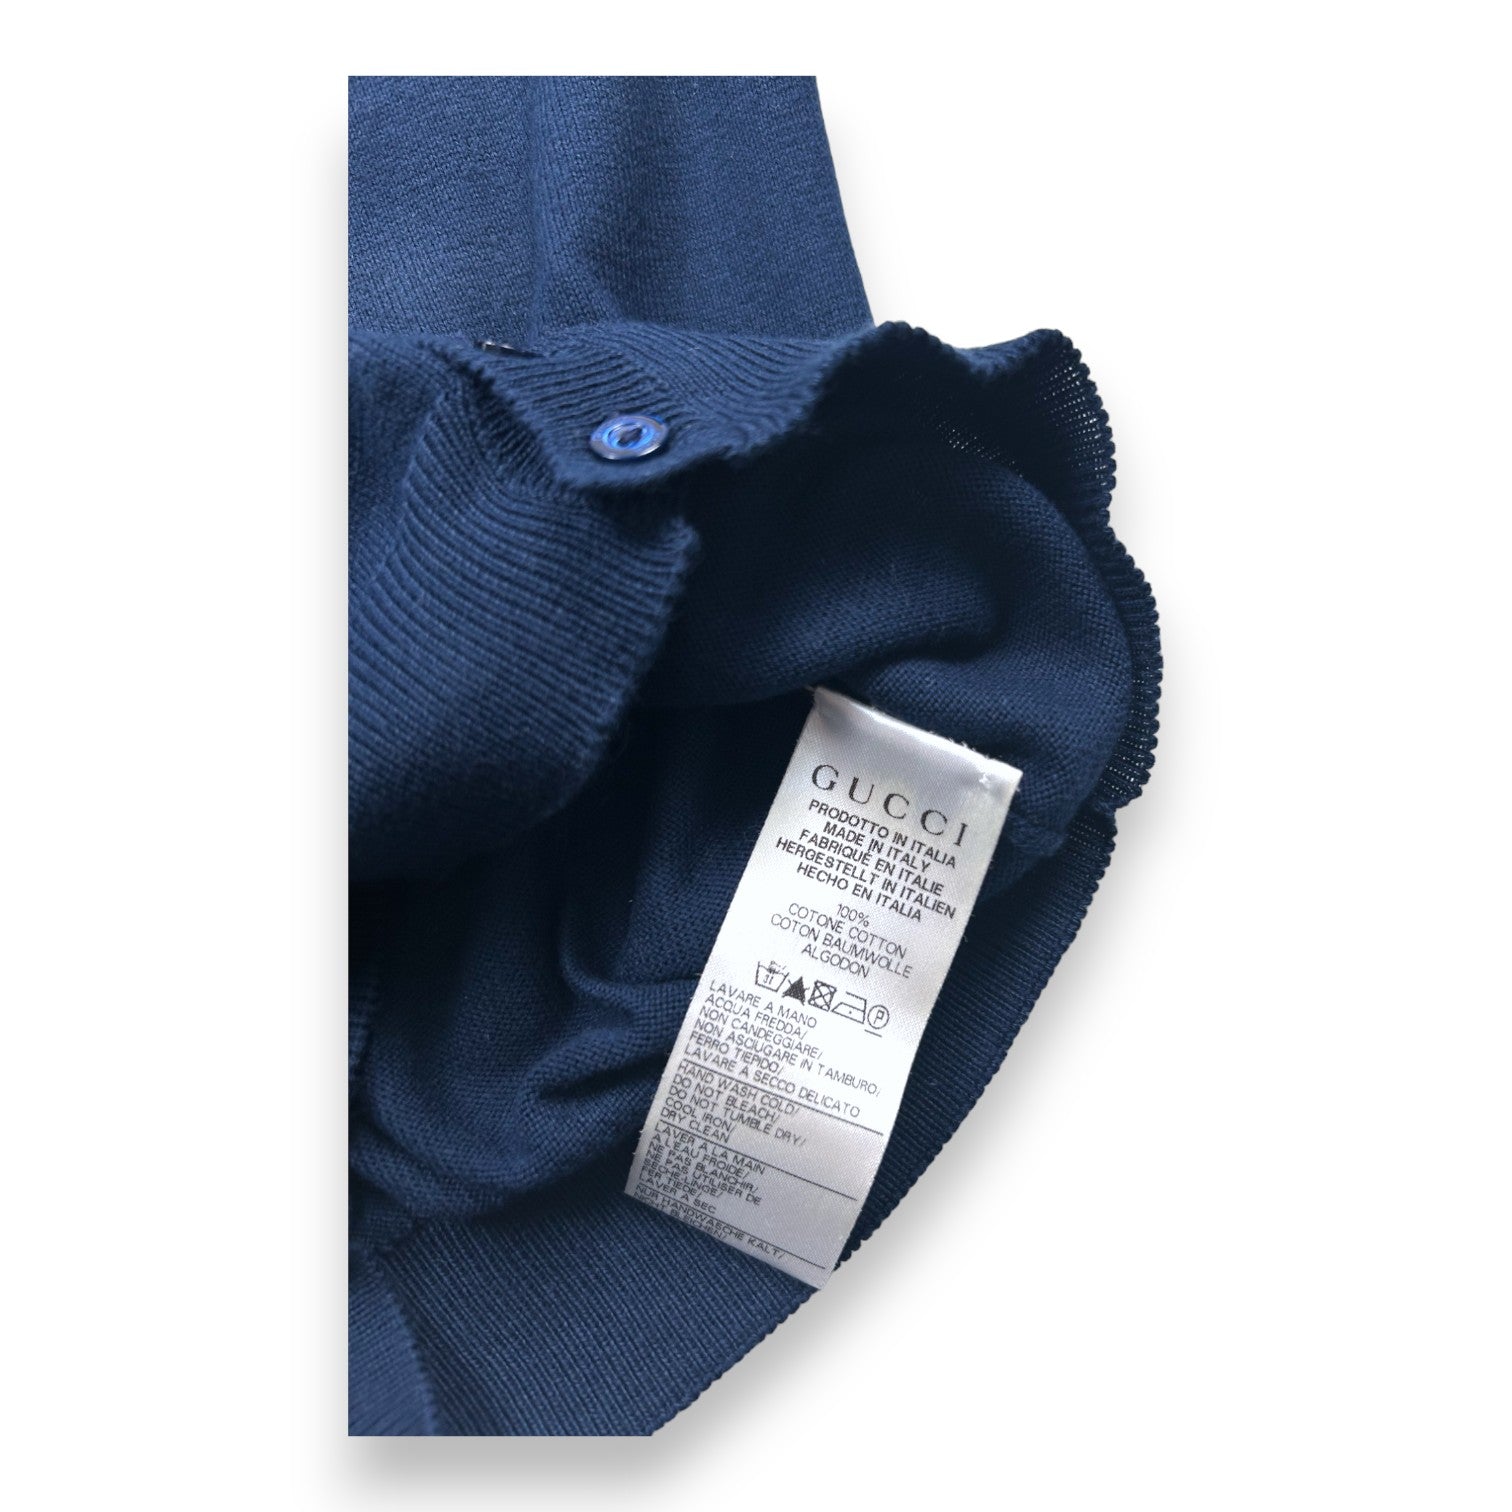 GUCCI - Cardigan bleu marine en coton - 12/18 mois